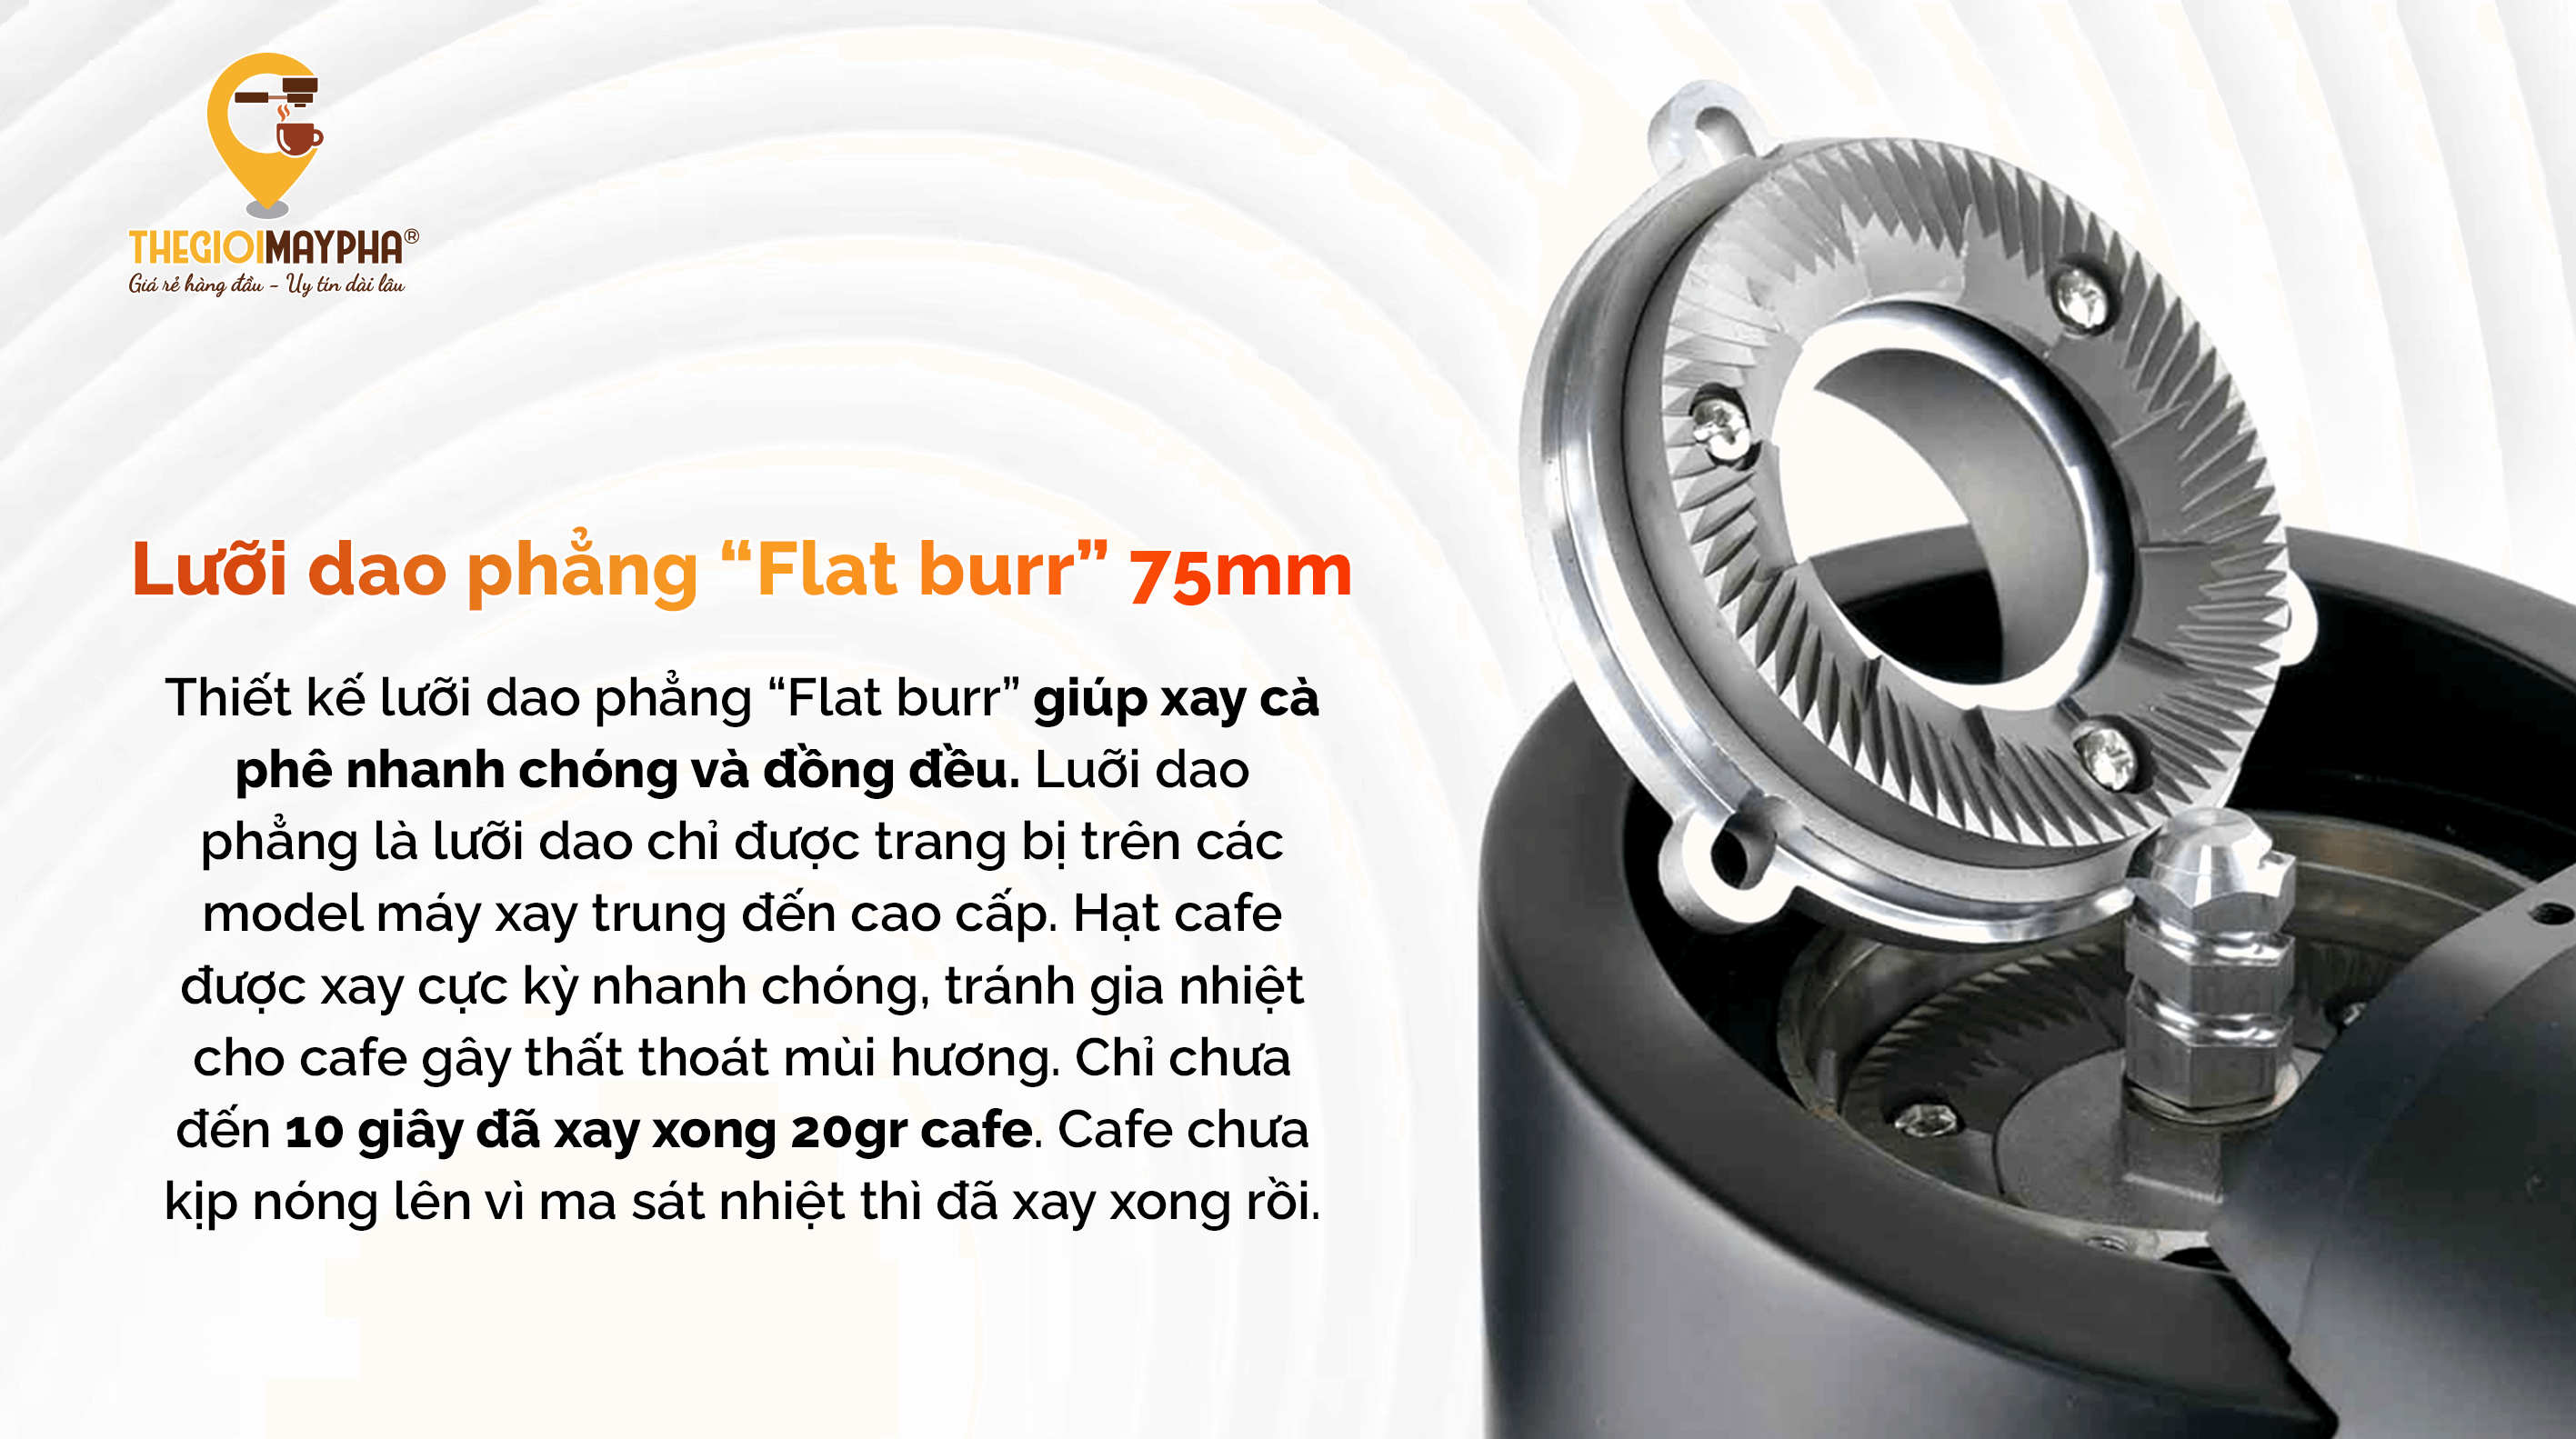 Lưỡi dao phẳng “flat burr” 75mm